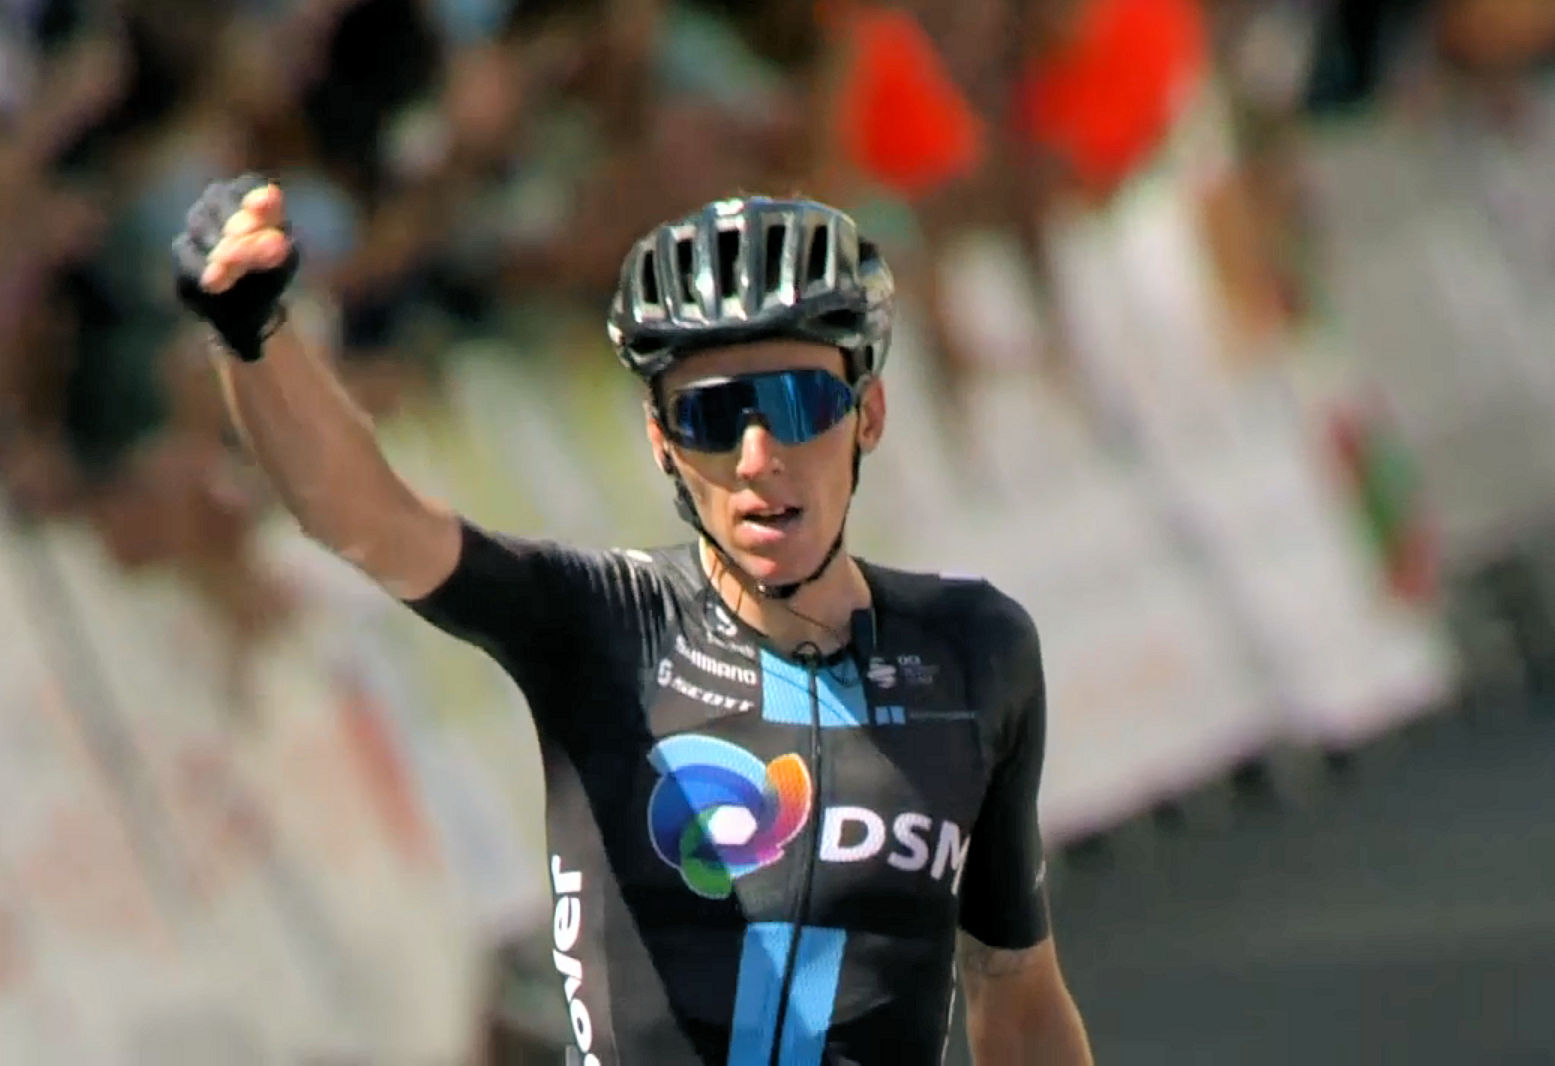 Vuelta a Burgos 2021: etap 3. Romain Bardet obejmuje prowadzenie